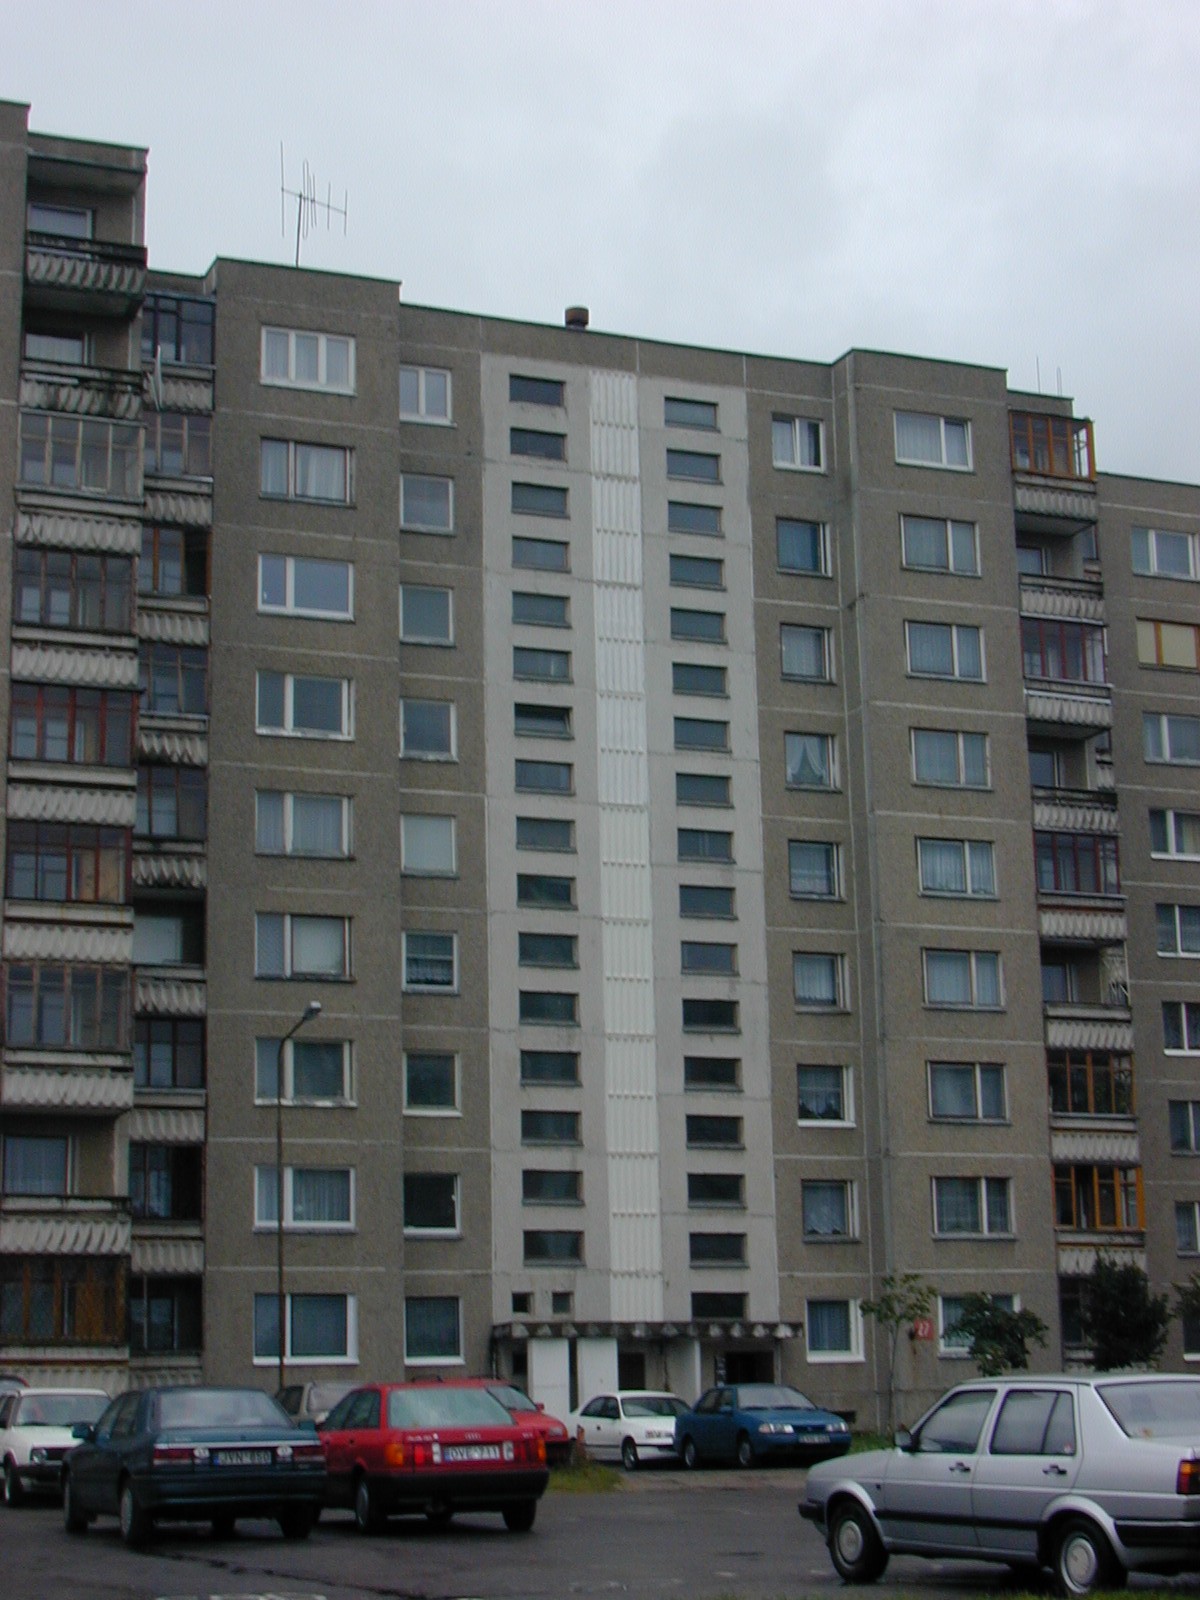 Rygos g. 27, Vilnius